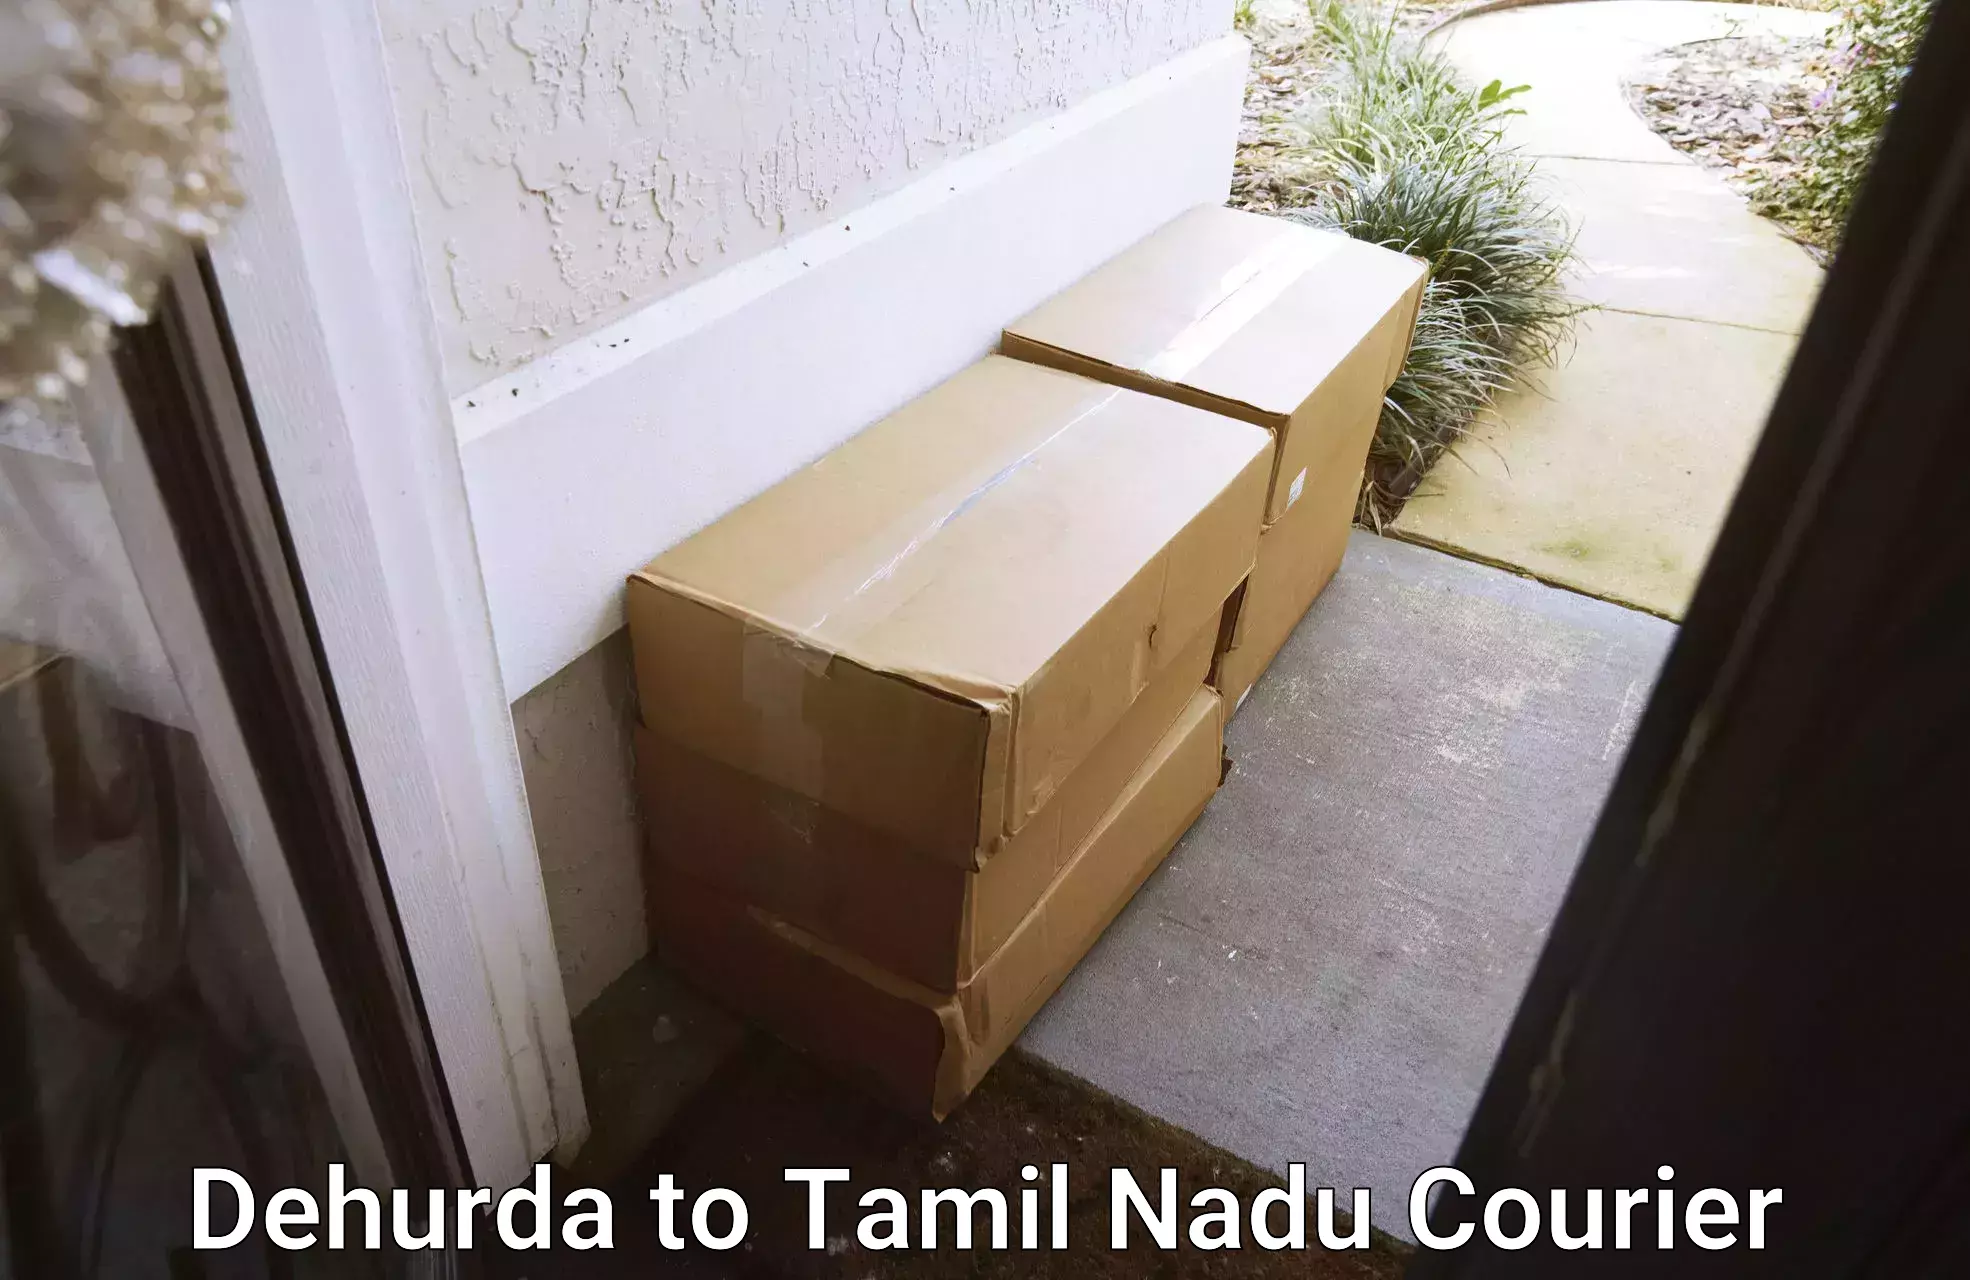 User-friendly delivery service Dehurda to Ariyalur